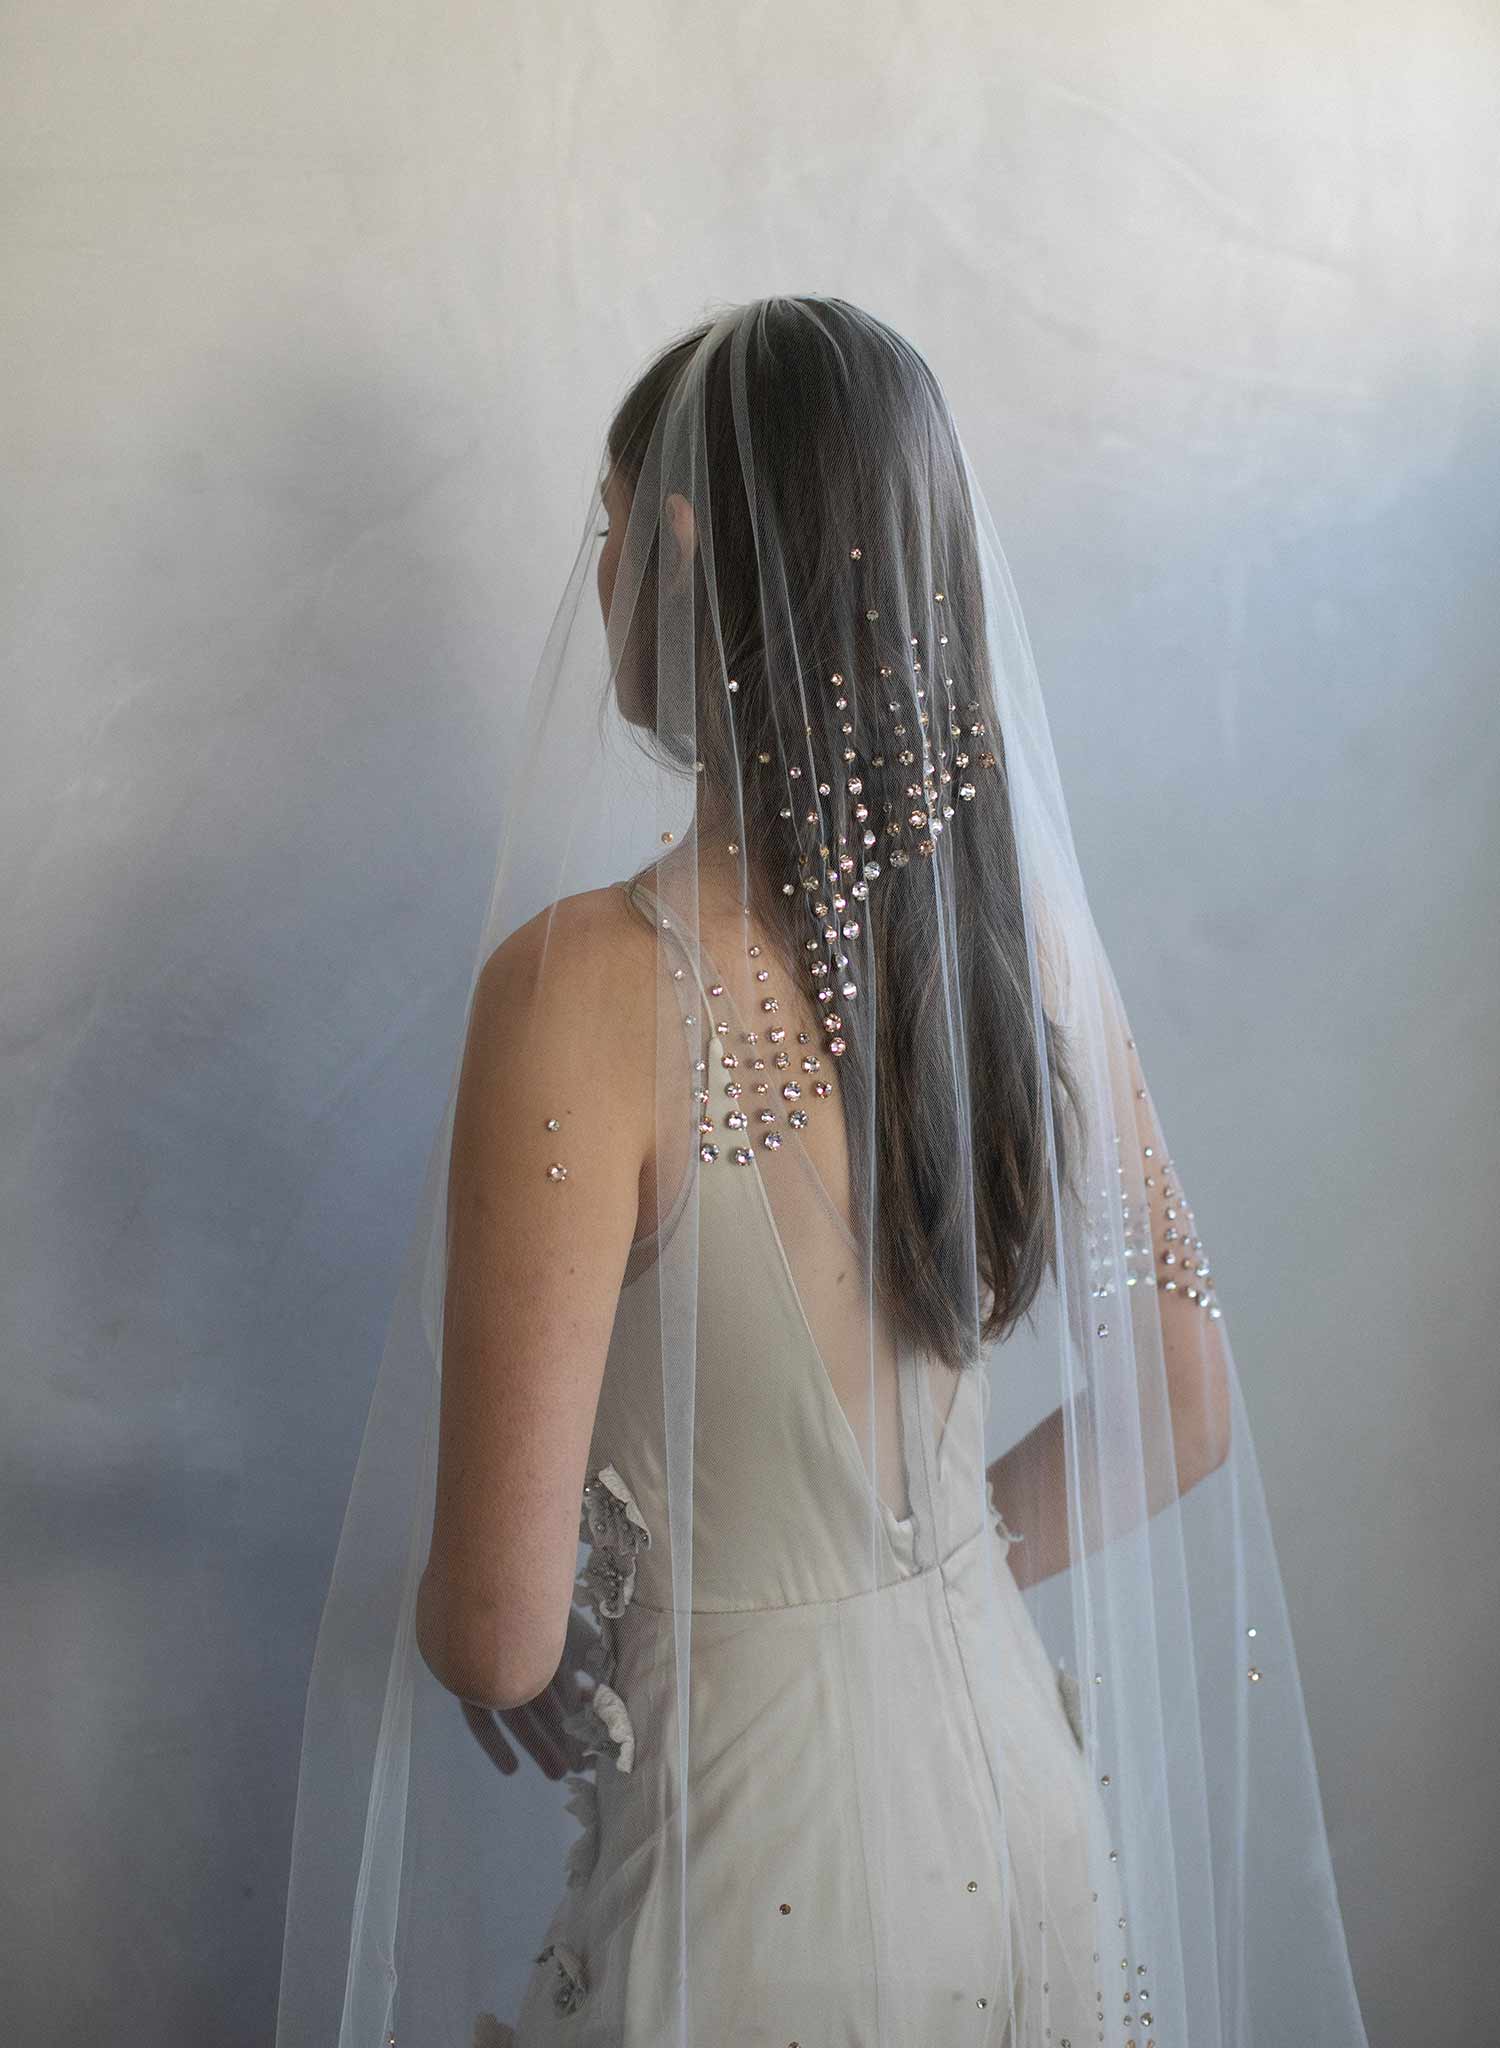 Crystal Chapel Wedding Veil by Twigs and Honey - Crystal Confetti Train Bridal Veil - Style #2062